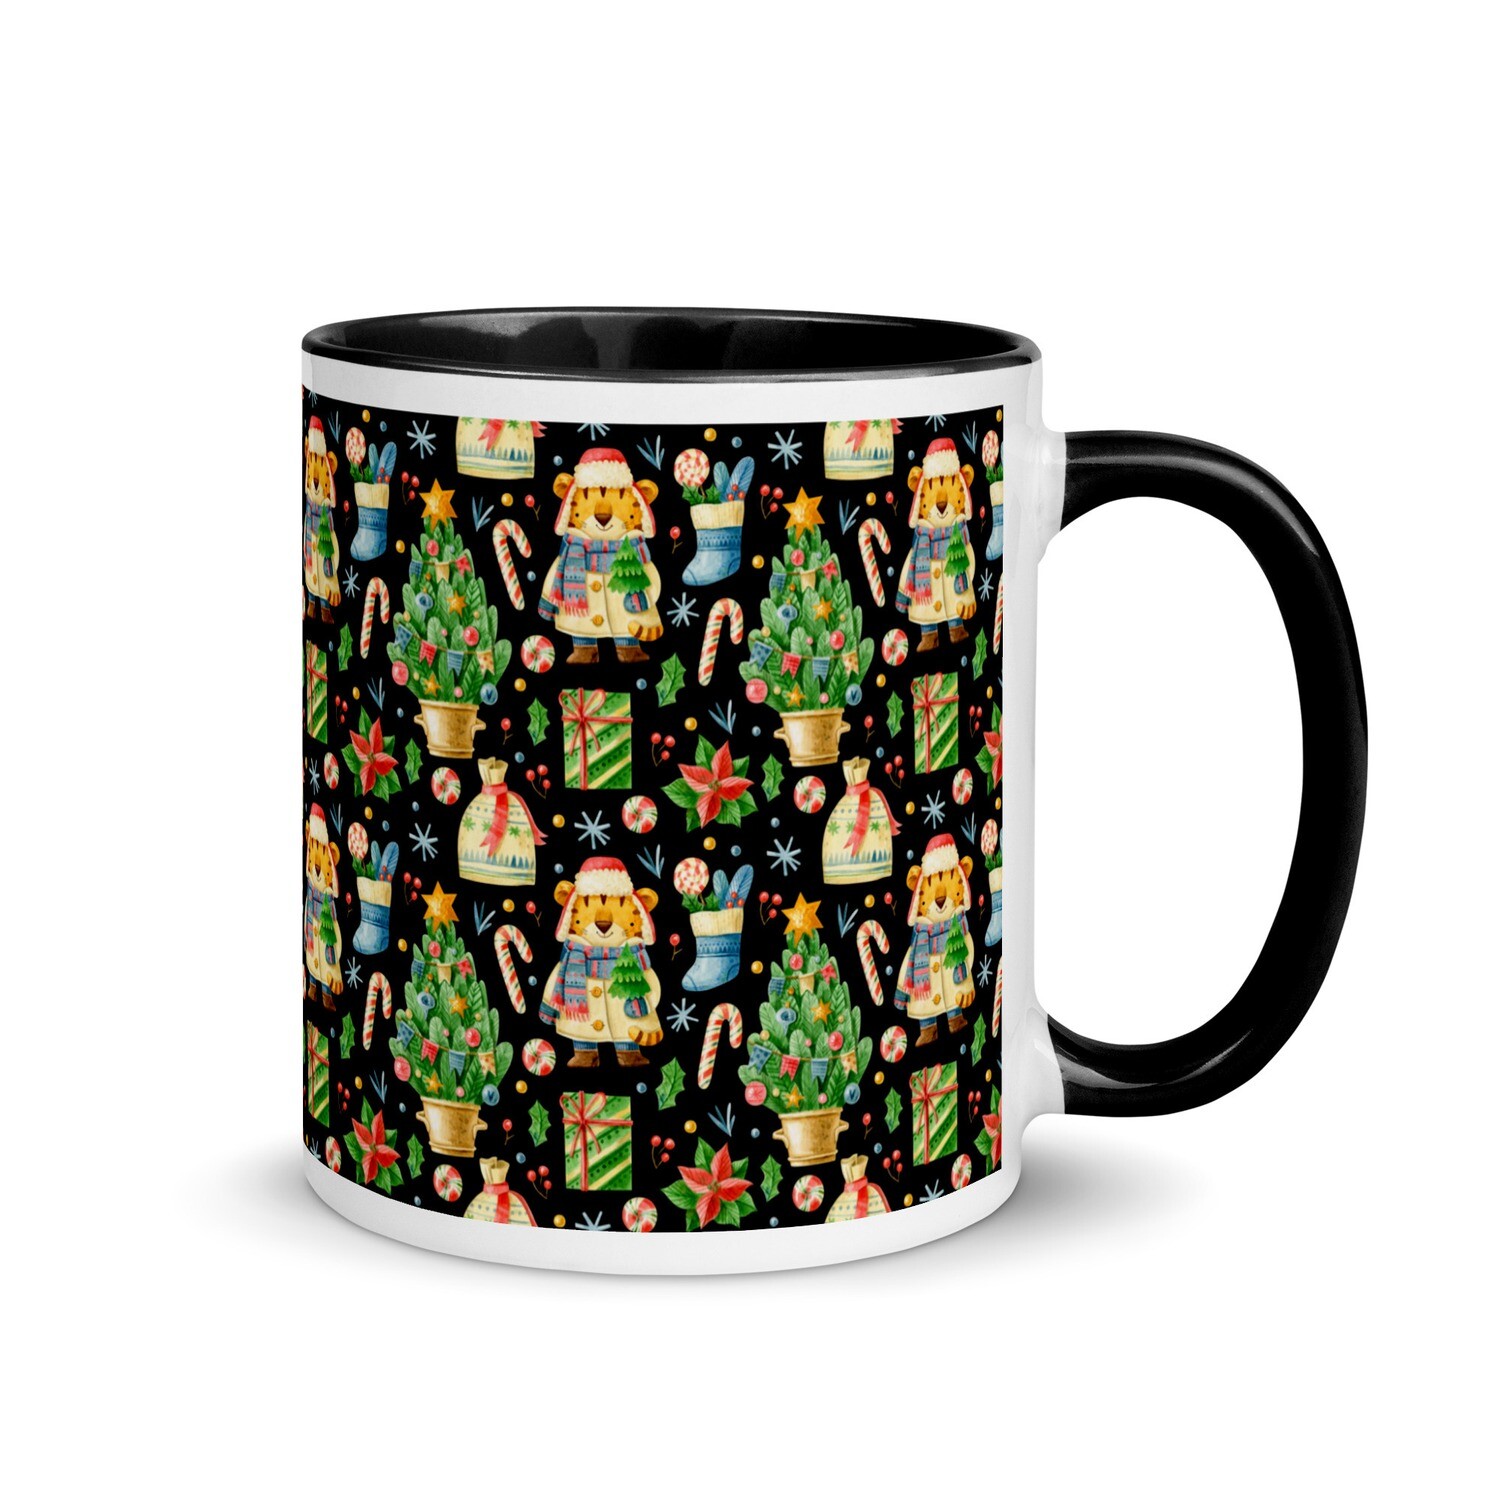 Festive mug - Design No. 2